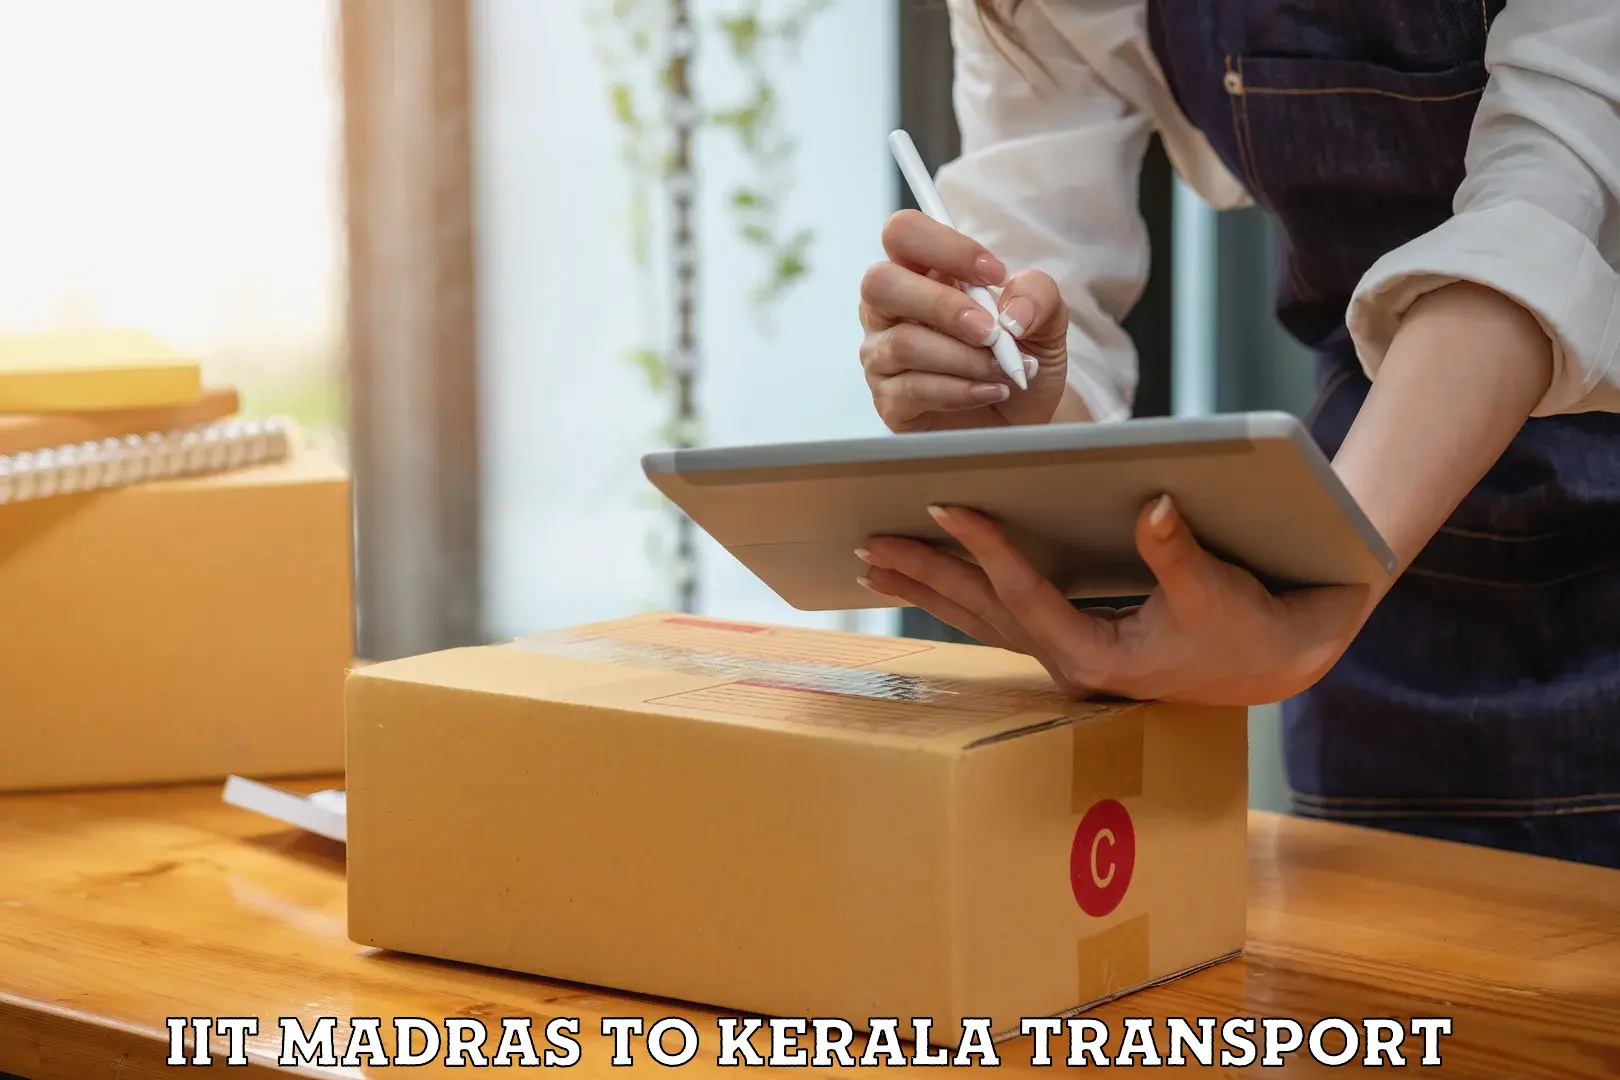 All India transport service IIT Madras to Kalluvathukkal